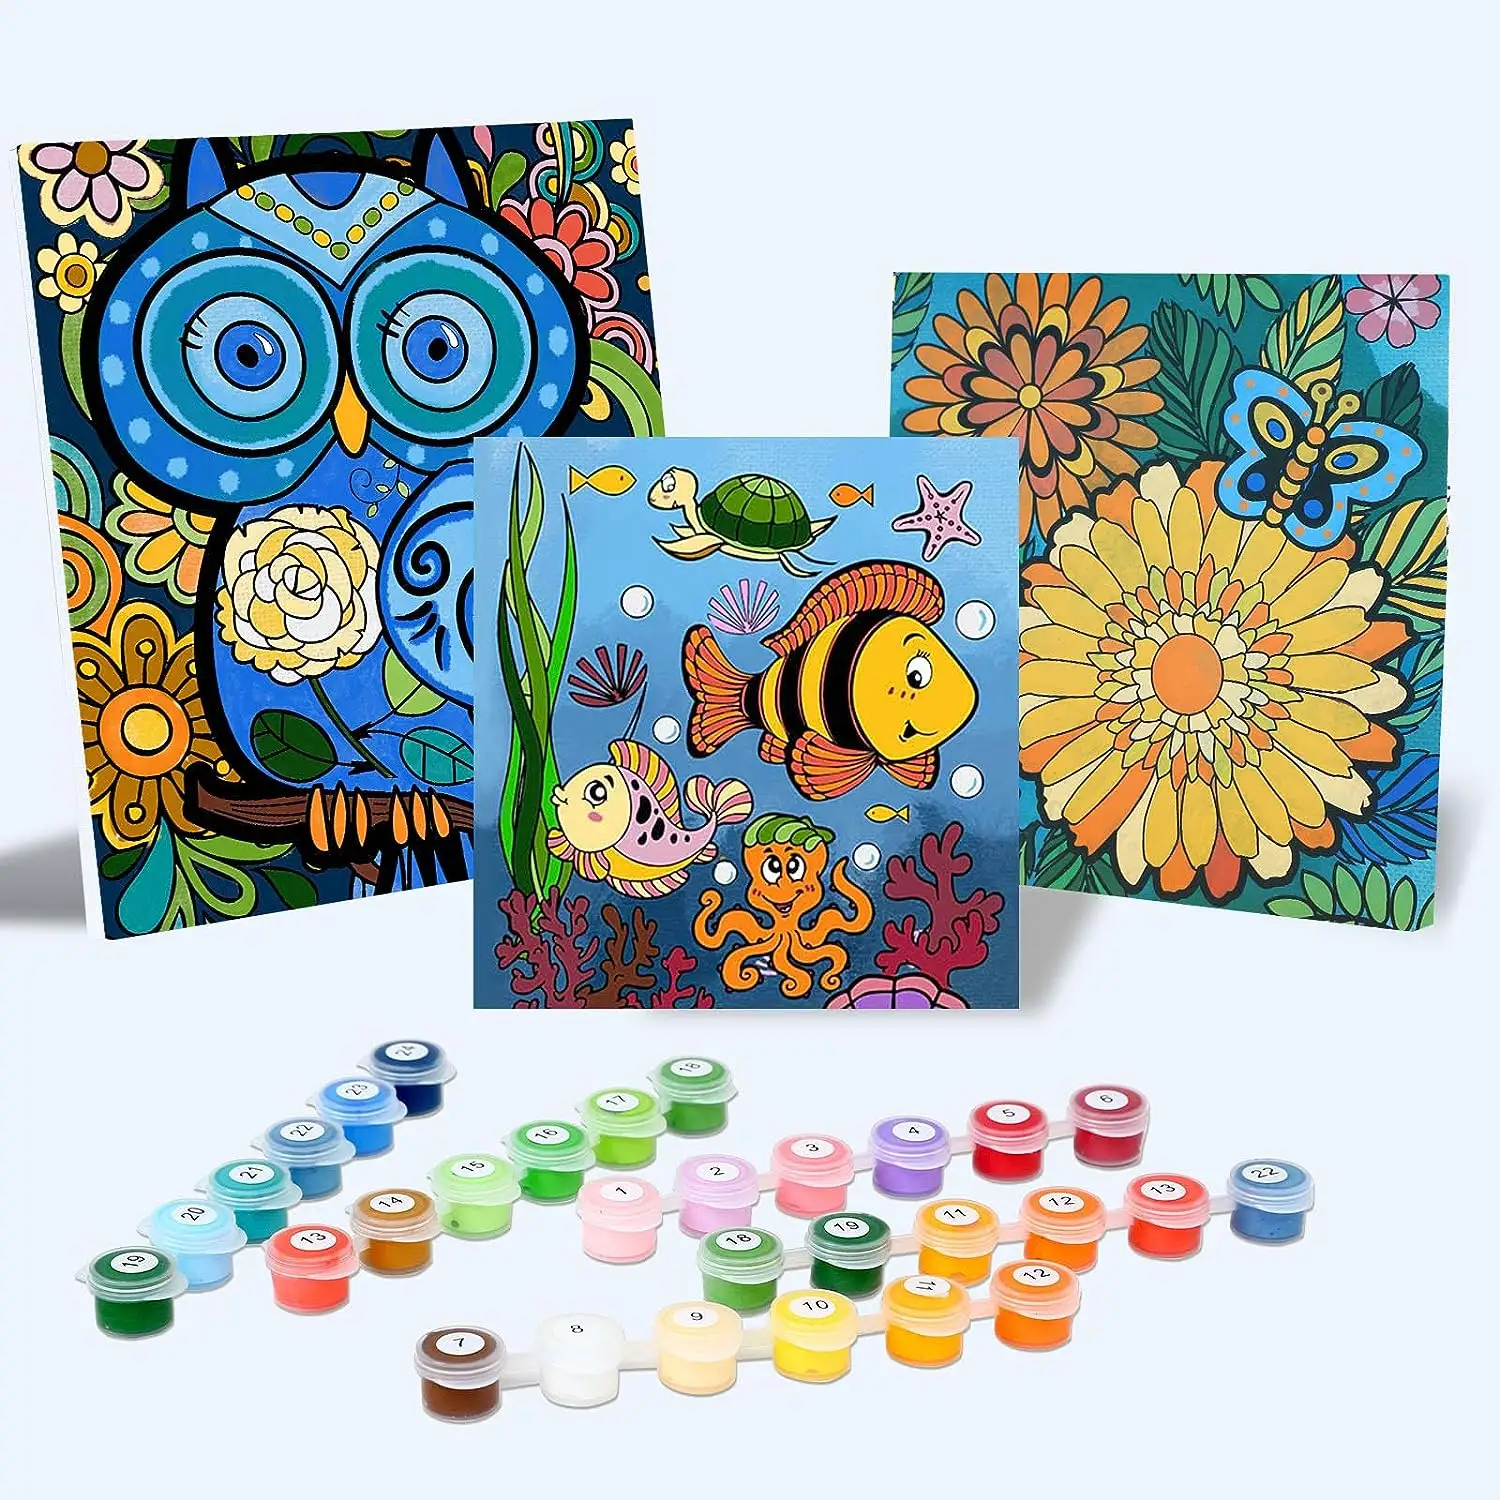 Kit de pintura por números para niños y adultos-Suministros de arte para niños 6-12-Kits de pintura para niños-Manualidades y diversión-Verano